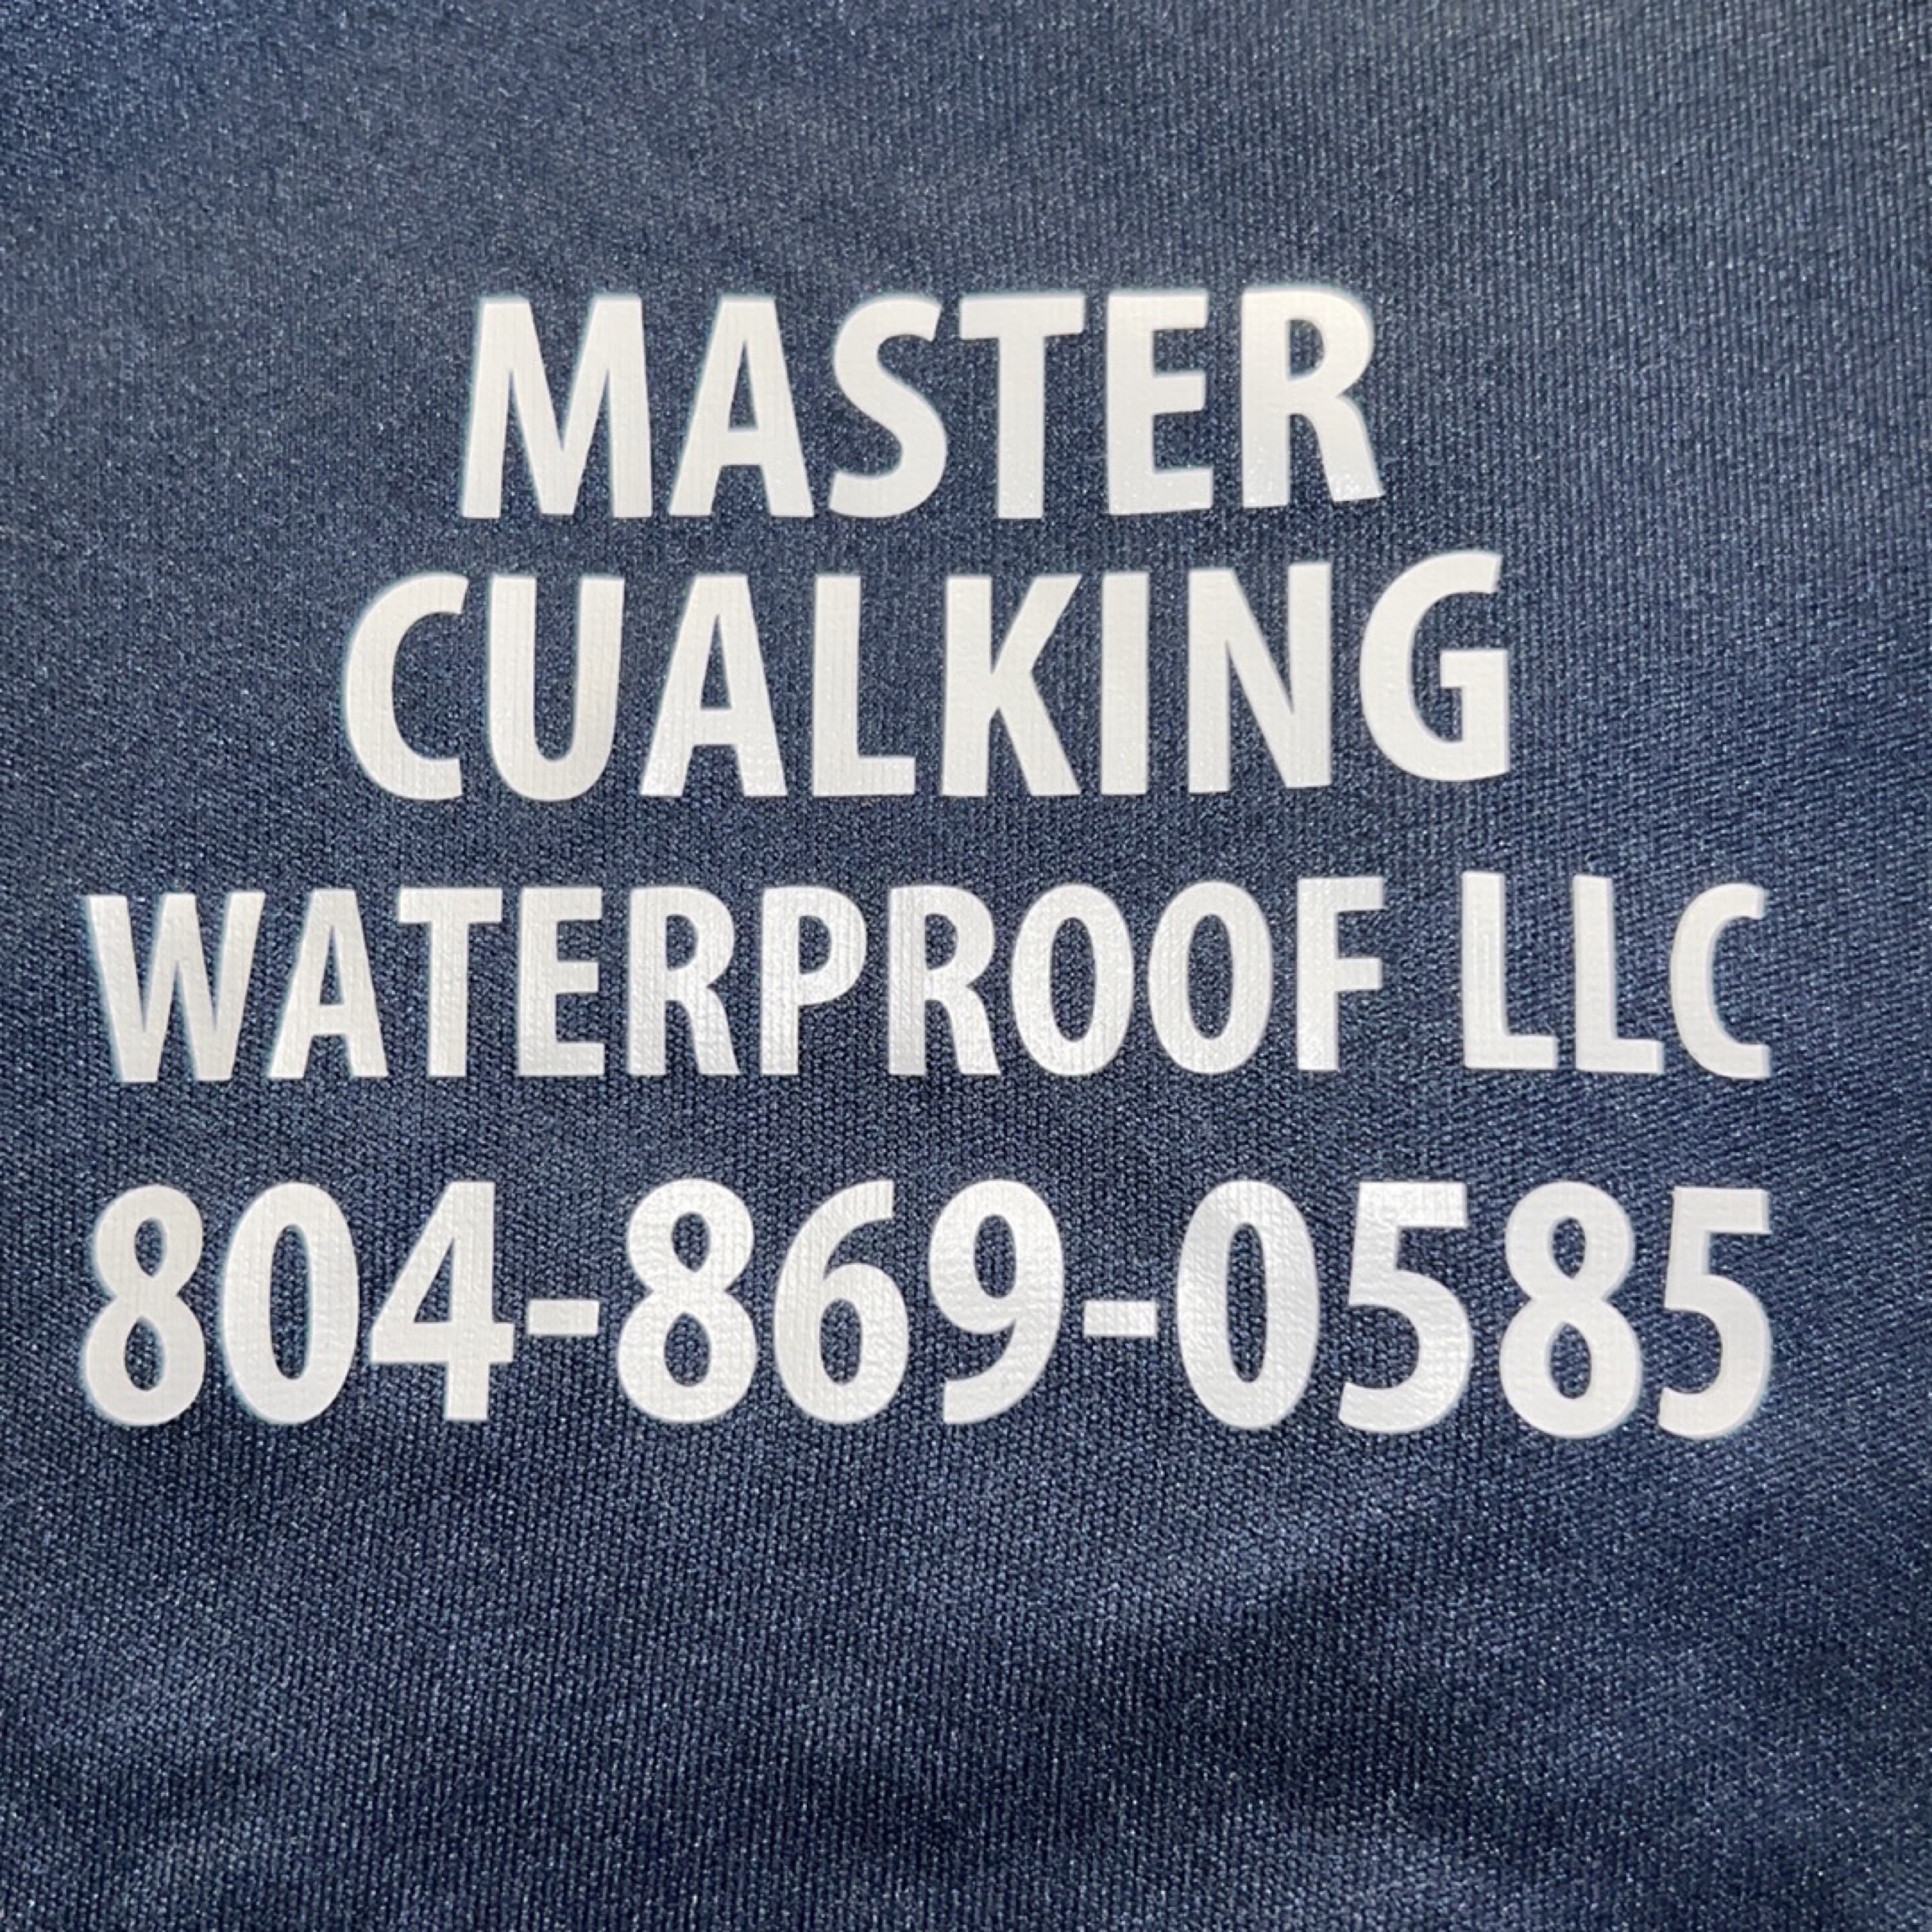 Master Caulking Waterproof Logo